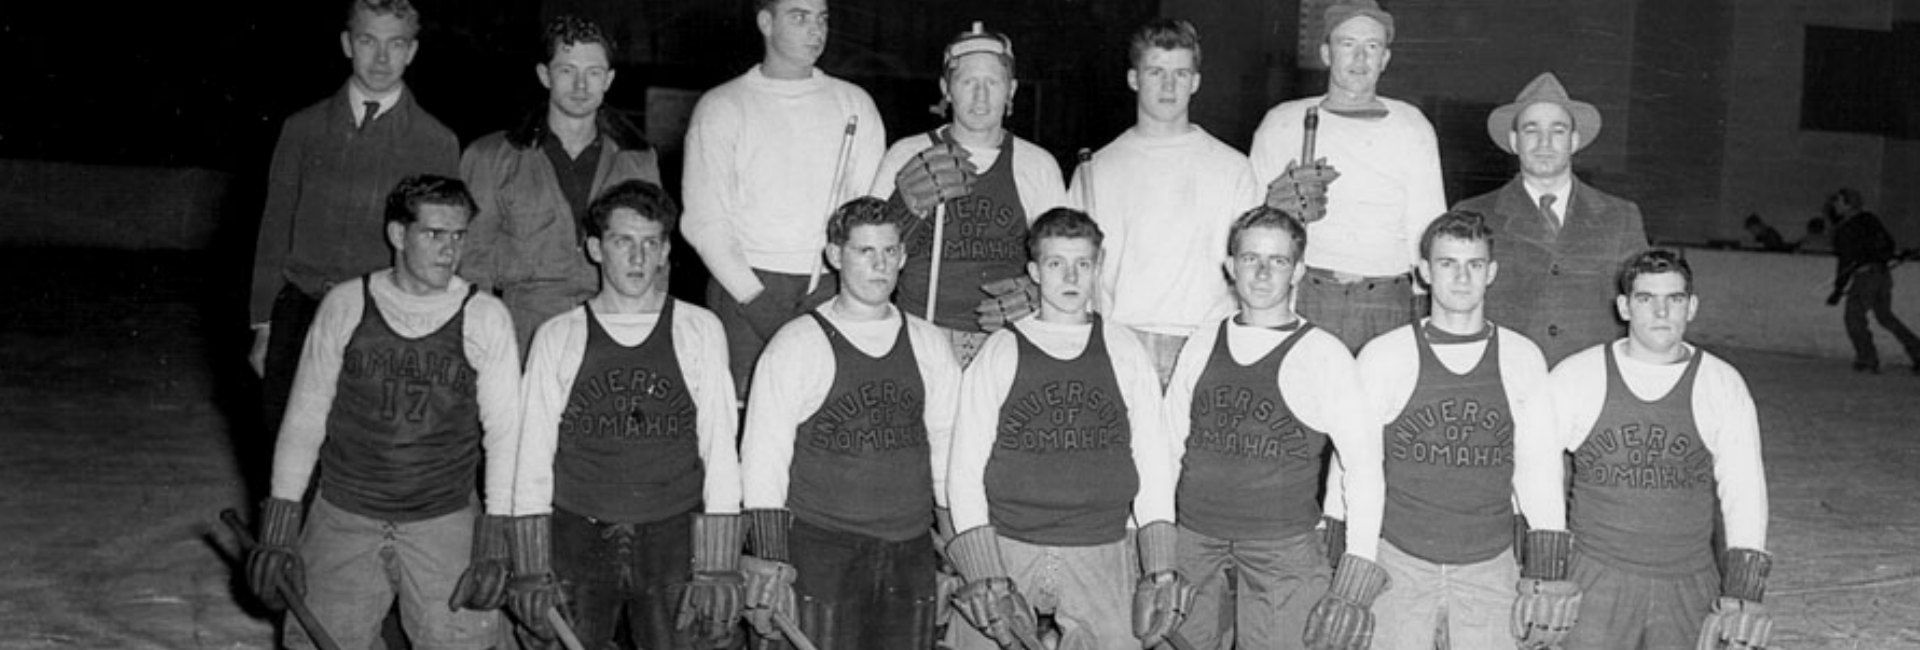 "University of Omaha" hockey in 1947